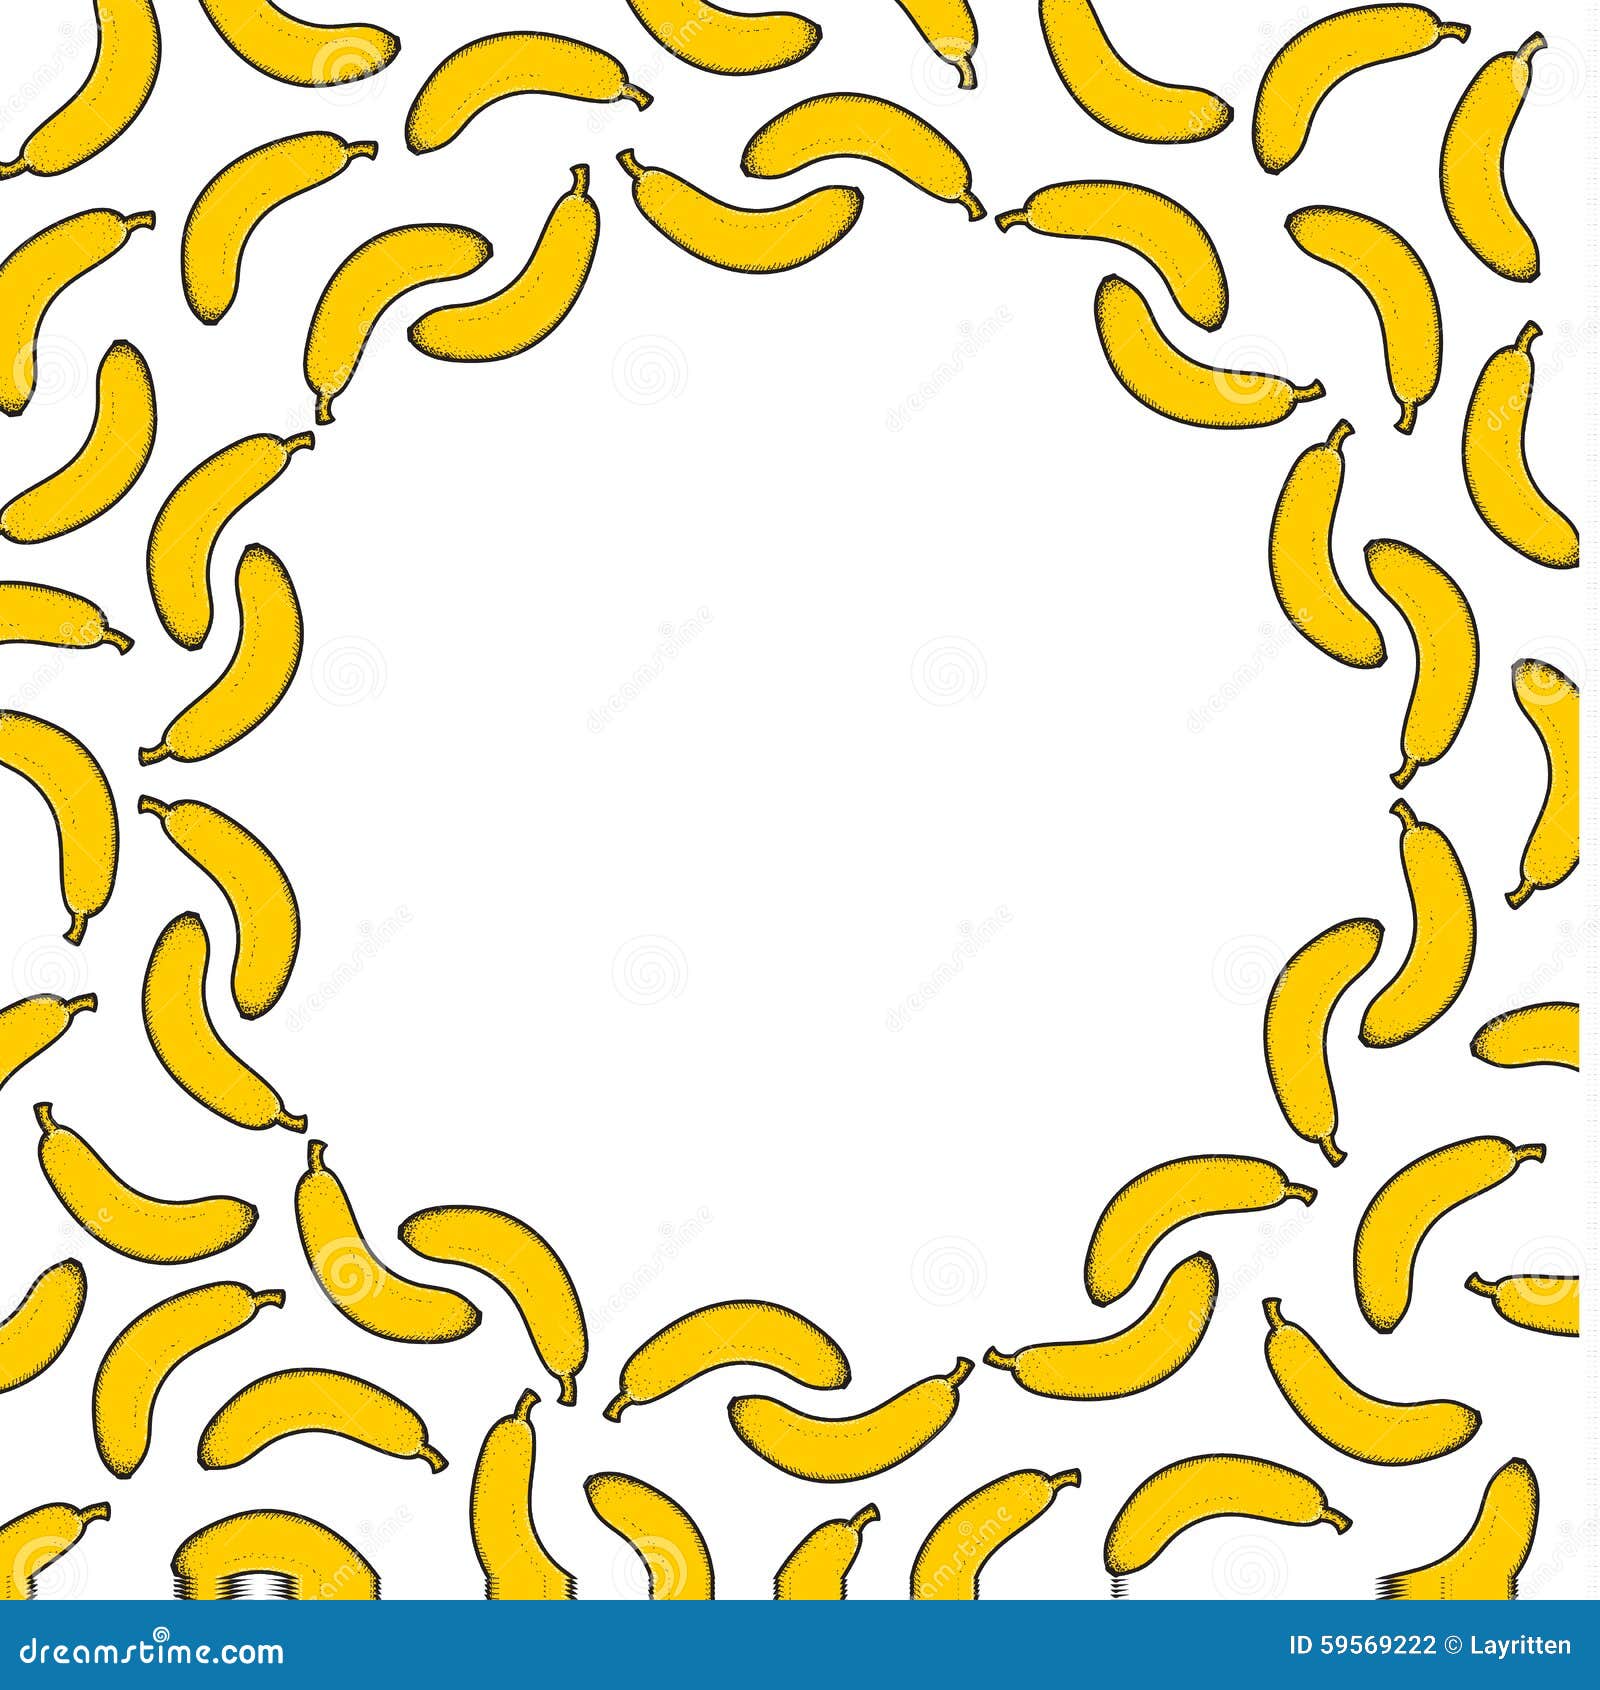 Background Pattern of Sketch Bananas for Design. Fruit Frame Stock ...